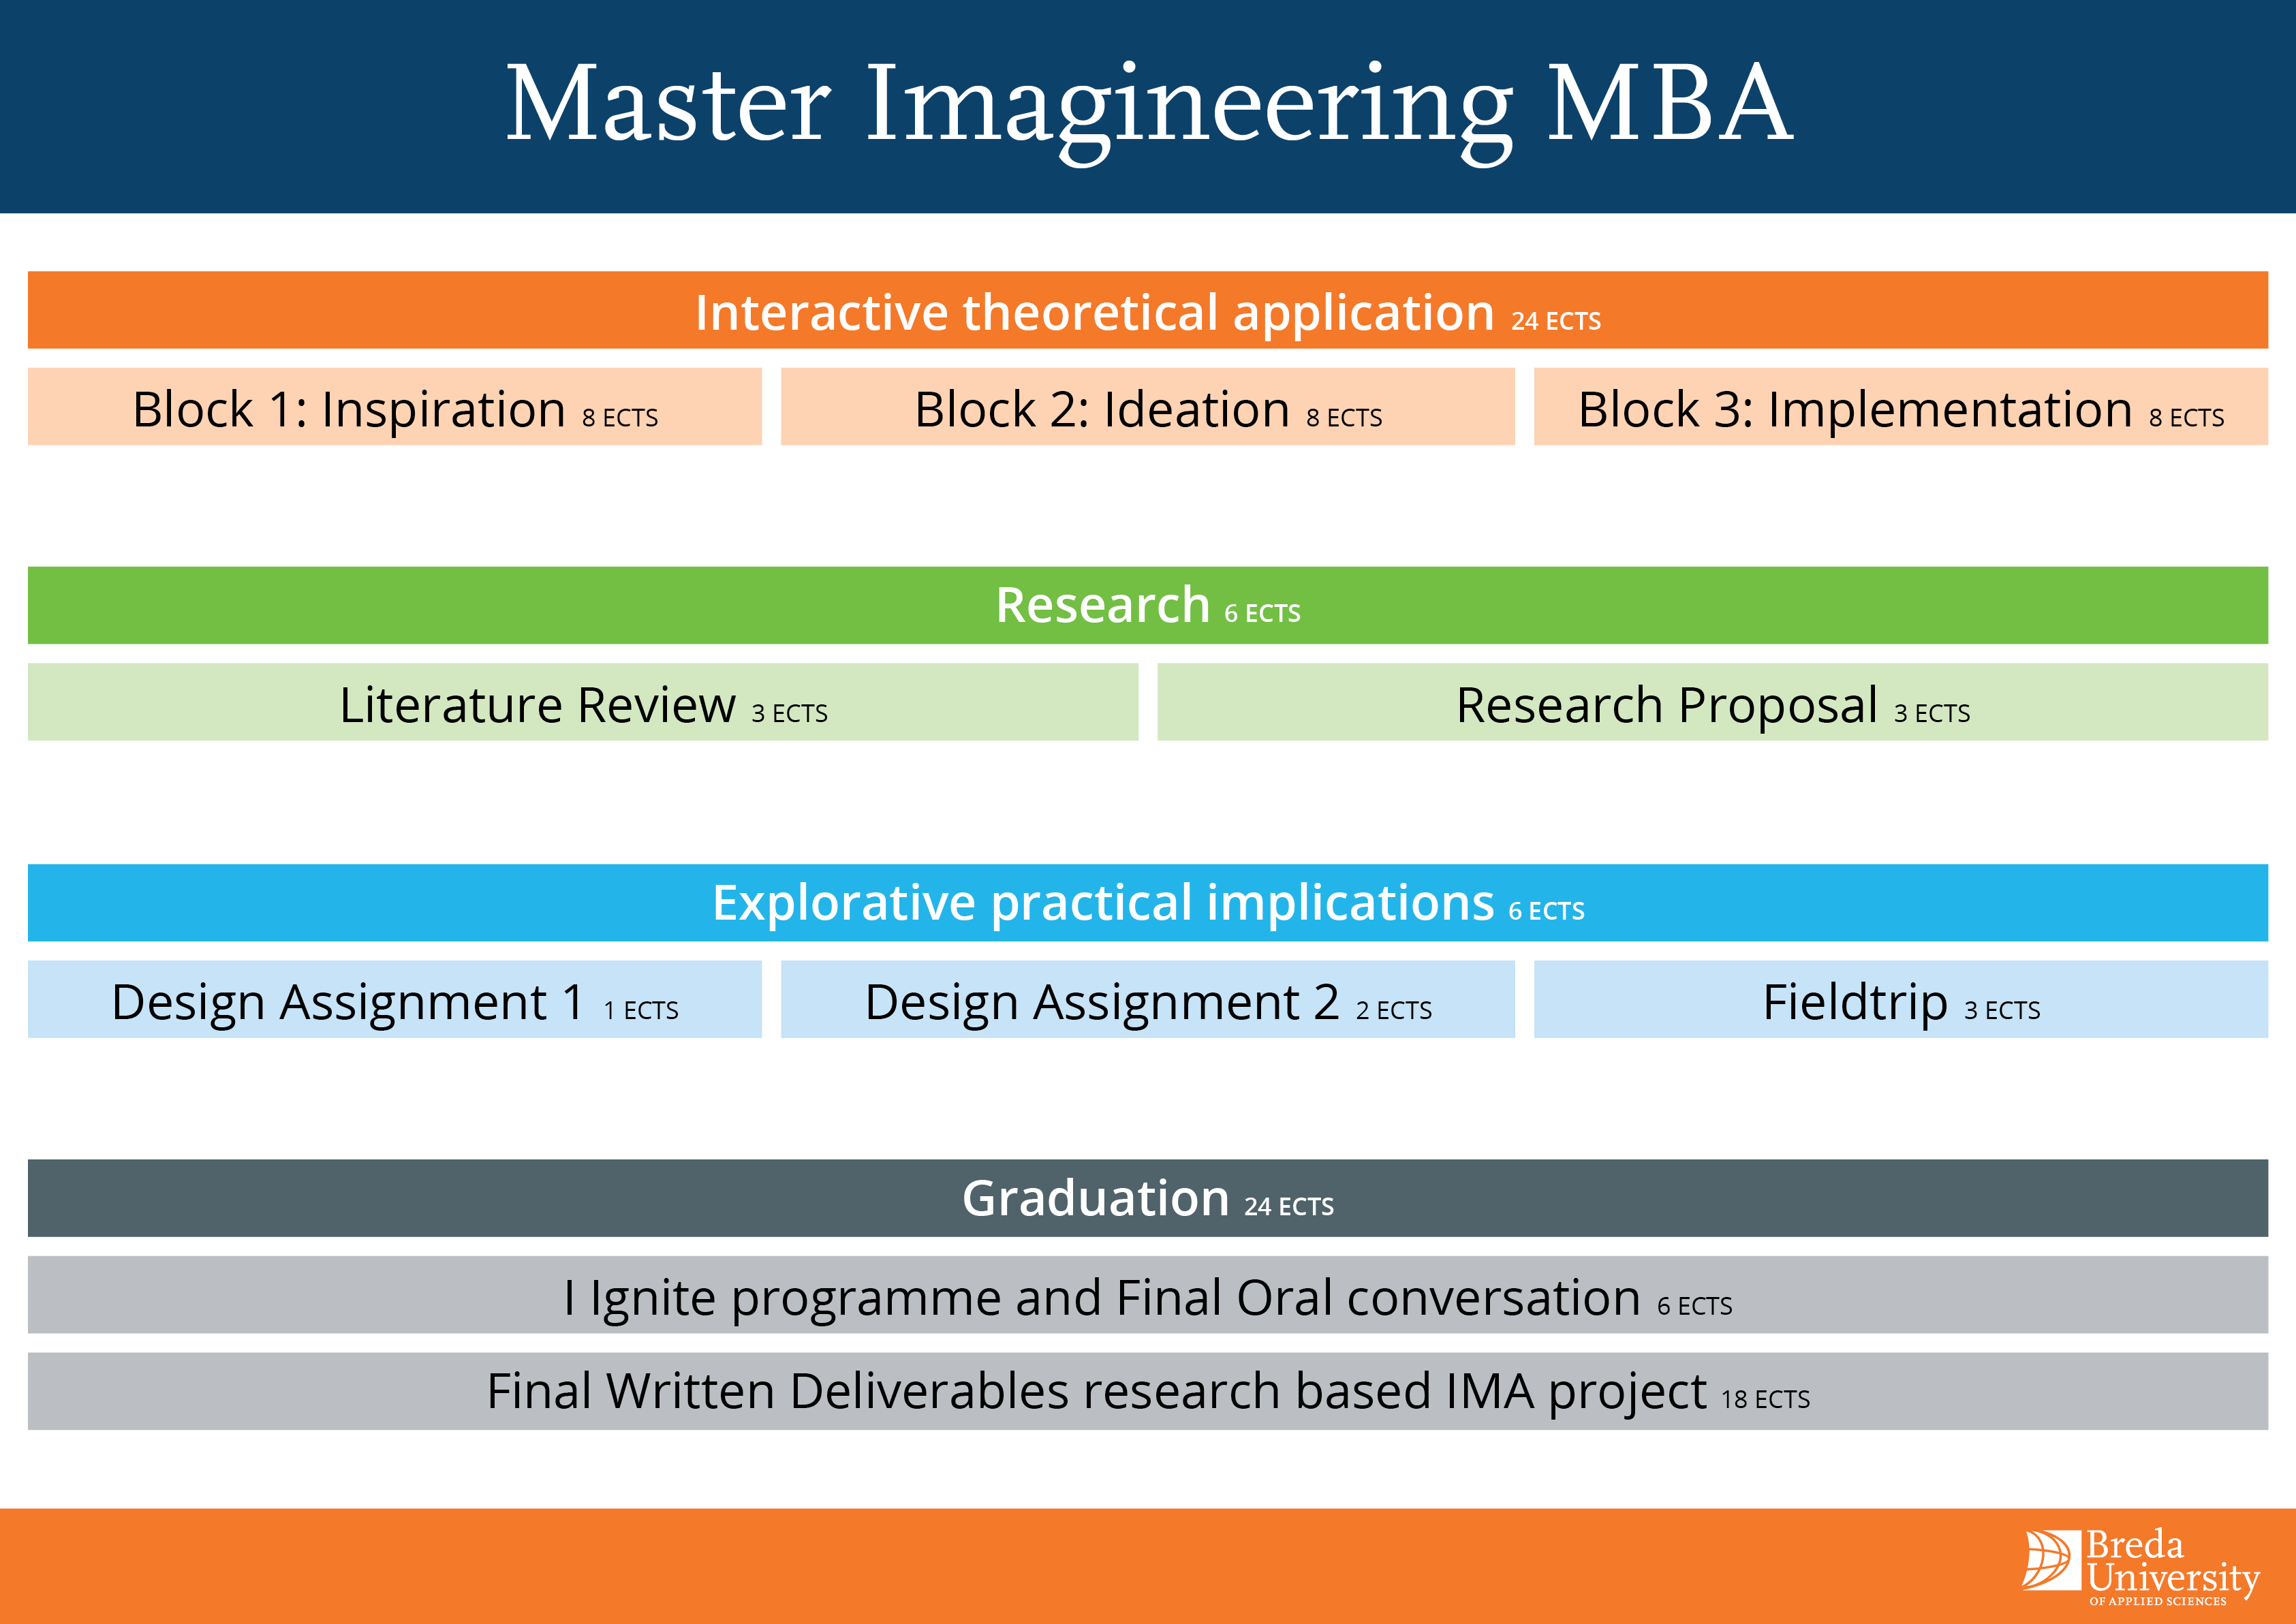 Imagineering MBA - Curriculum